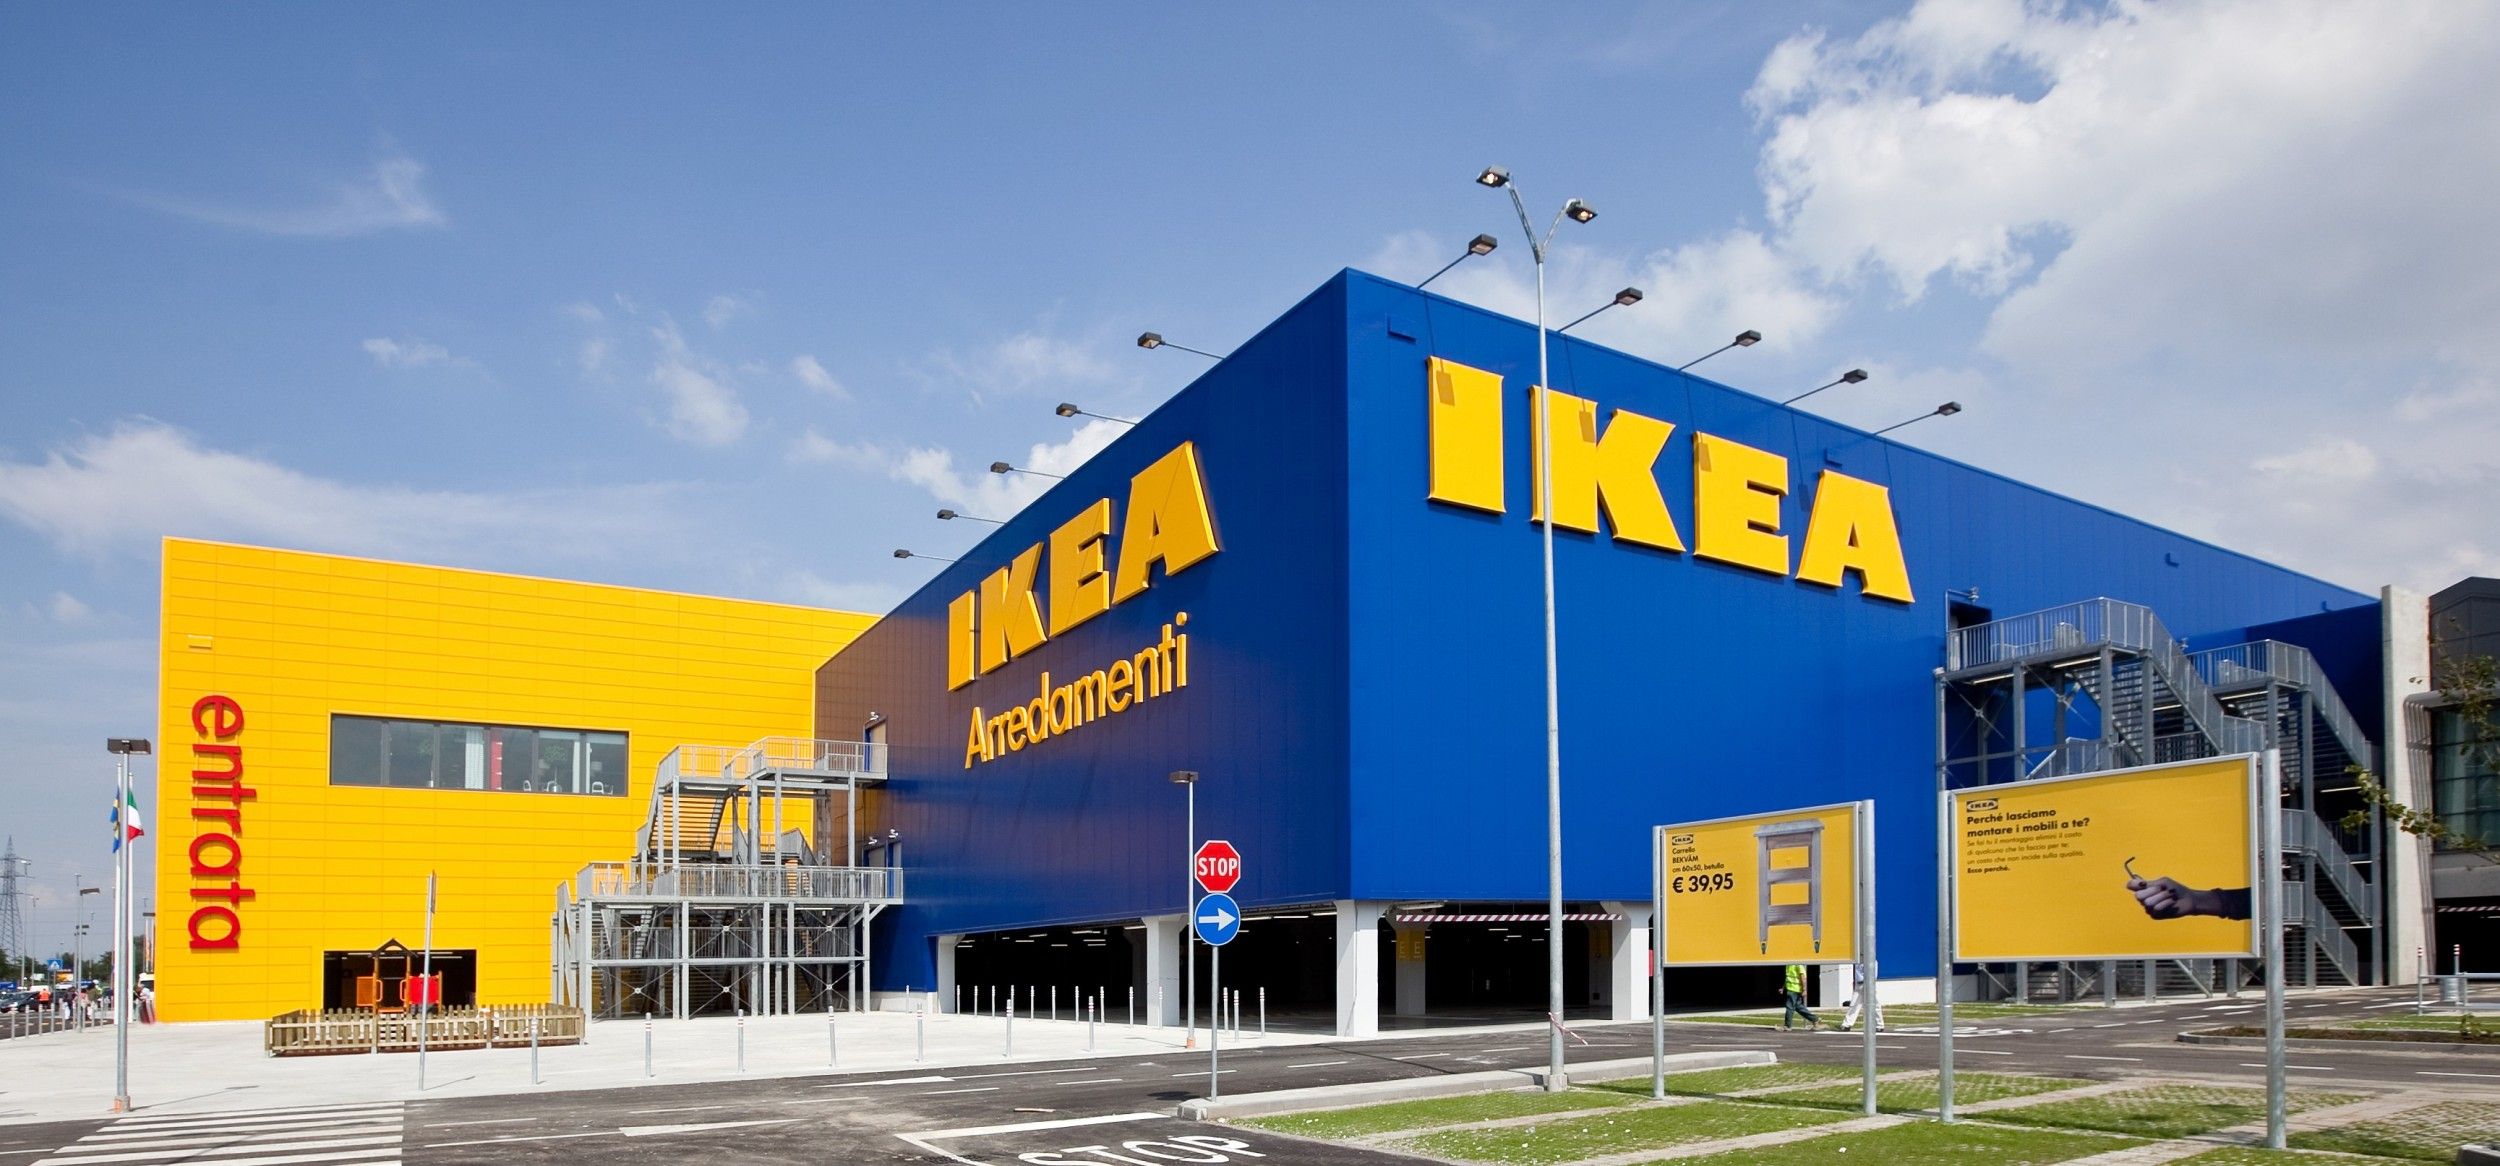 Attenzione alle cassettiere Ikea: pericolose per i bambini